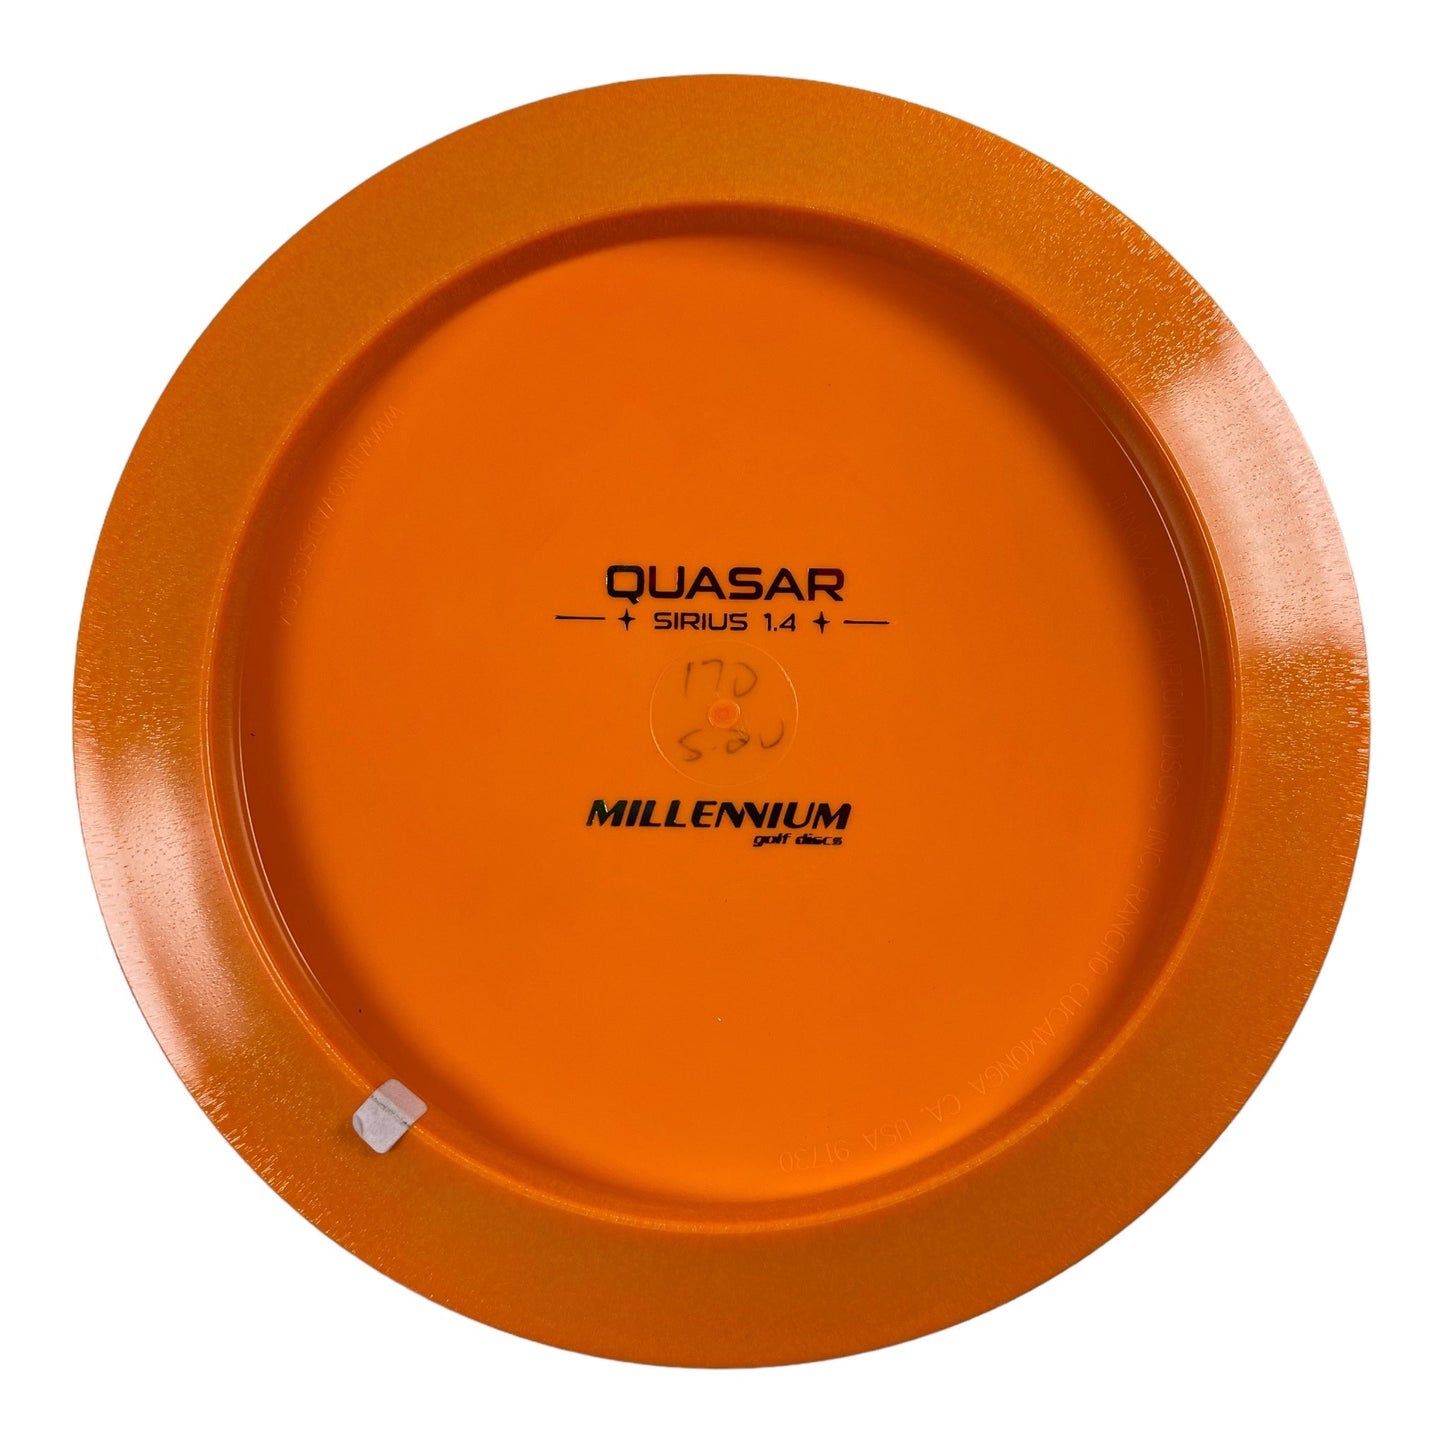 Millennium Golf Discs Quasar | Sirius | Orange/Rainbow 170-171g Disc Golf